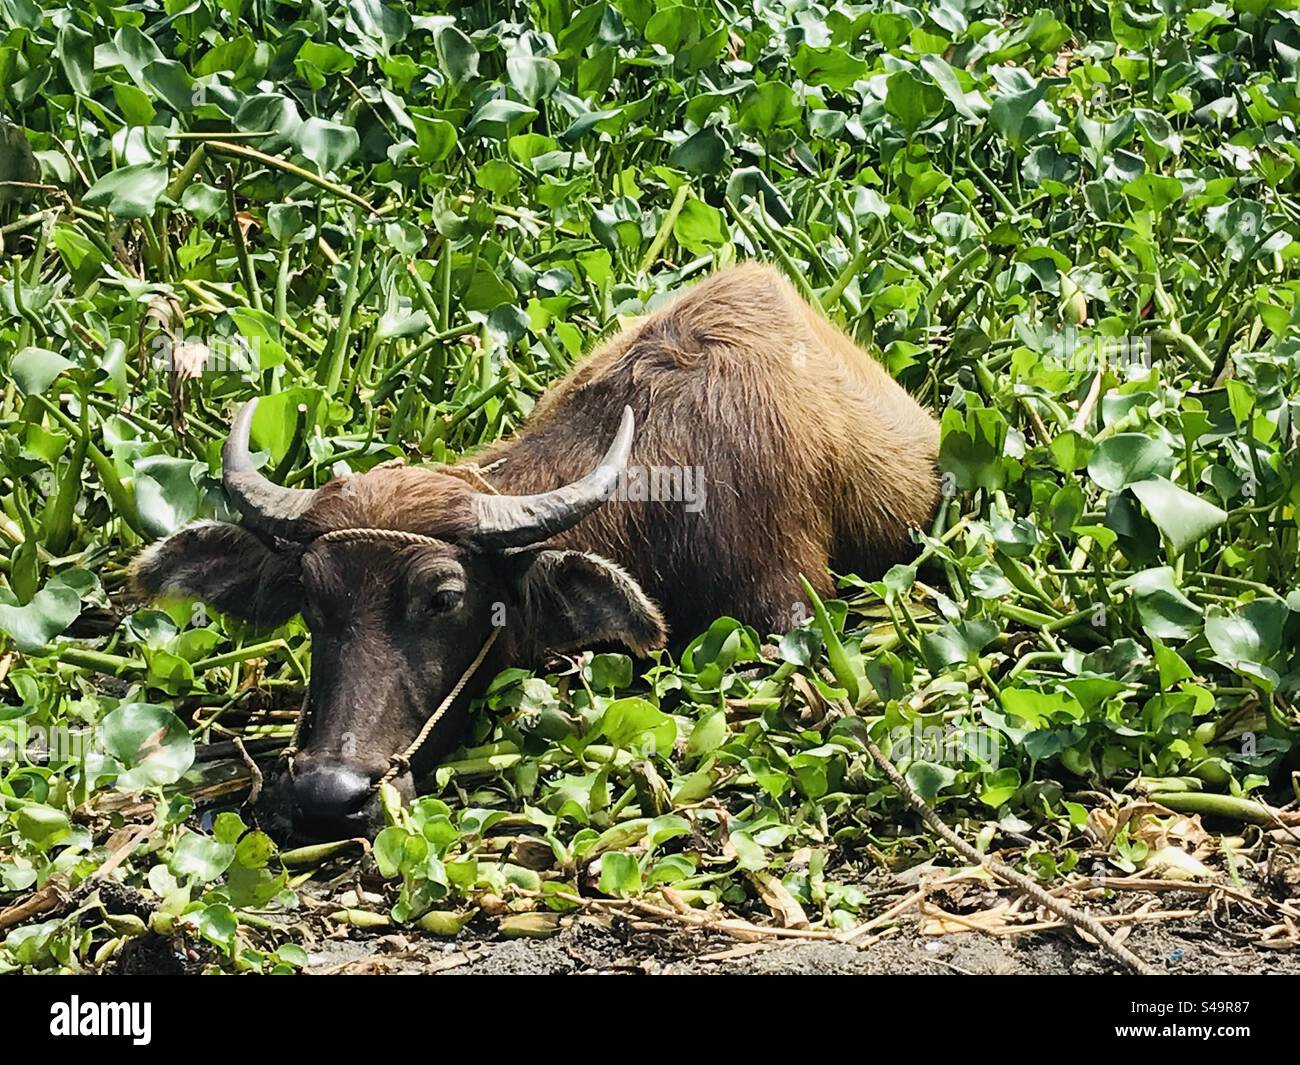 Ein philippinischer Wasserbüffel kühlt und tauchte sich nach einem langen Arbeitstag auf der Farm in einen Sumpf aus Grünpflanzen ein. Ein wunderschöner Anblick. Faszinierende ländliche Sehenswürdigkeiten. Ländlicher Charme. Stockfoto